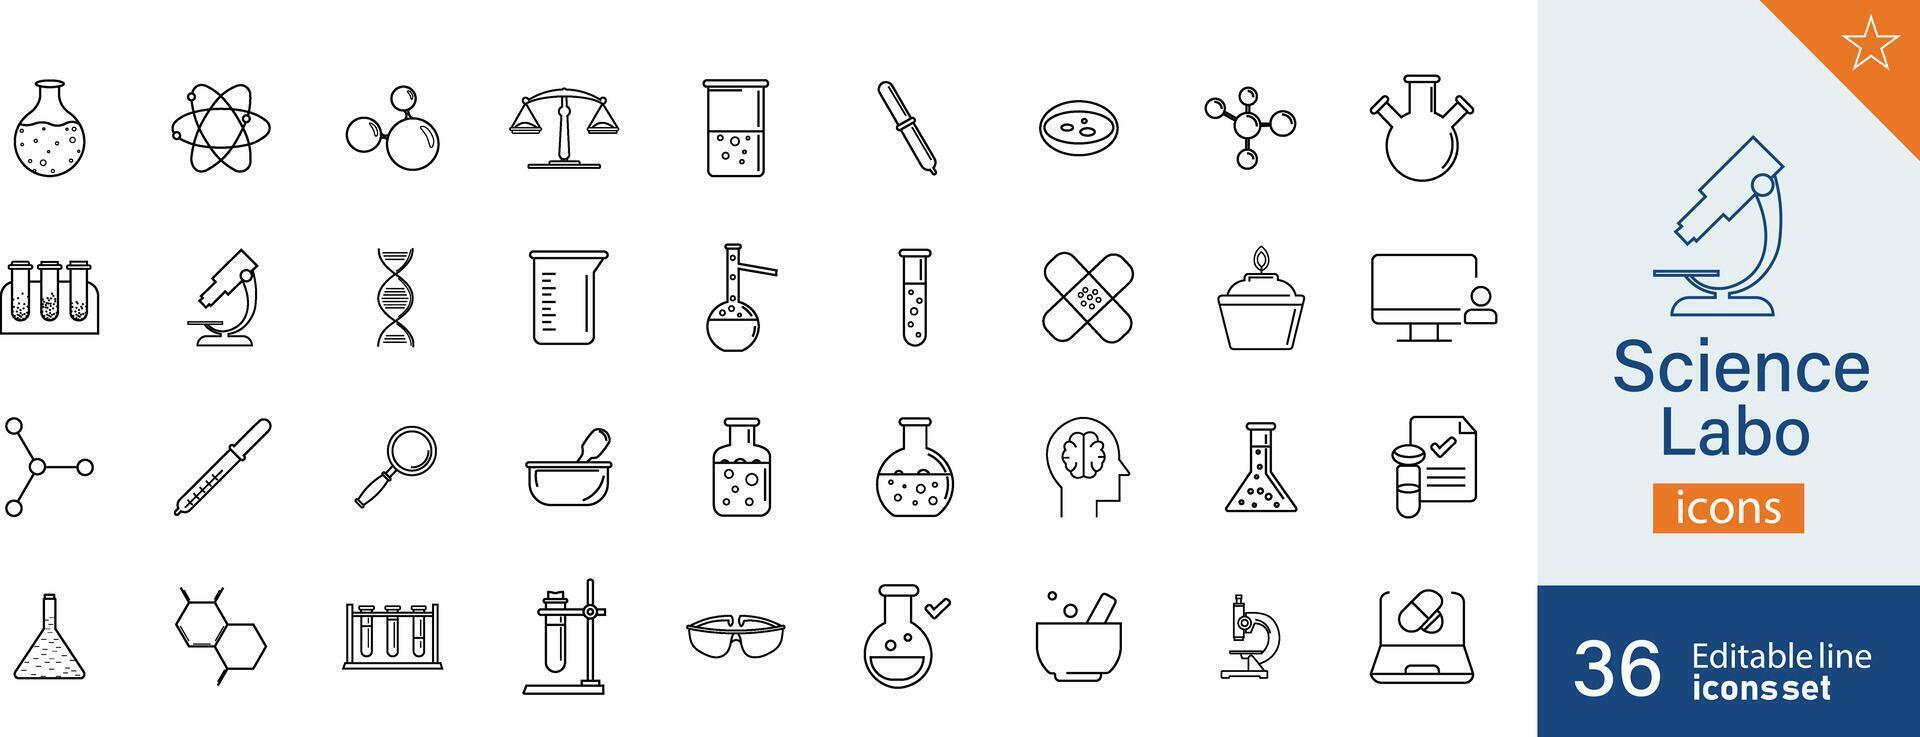 uppsättning av 32 vetenskap labo webb ikoner i linje stil. cyberrymden, data samling, design. vektor illustration.